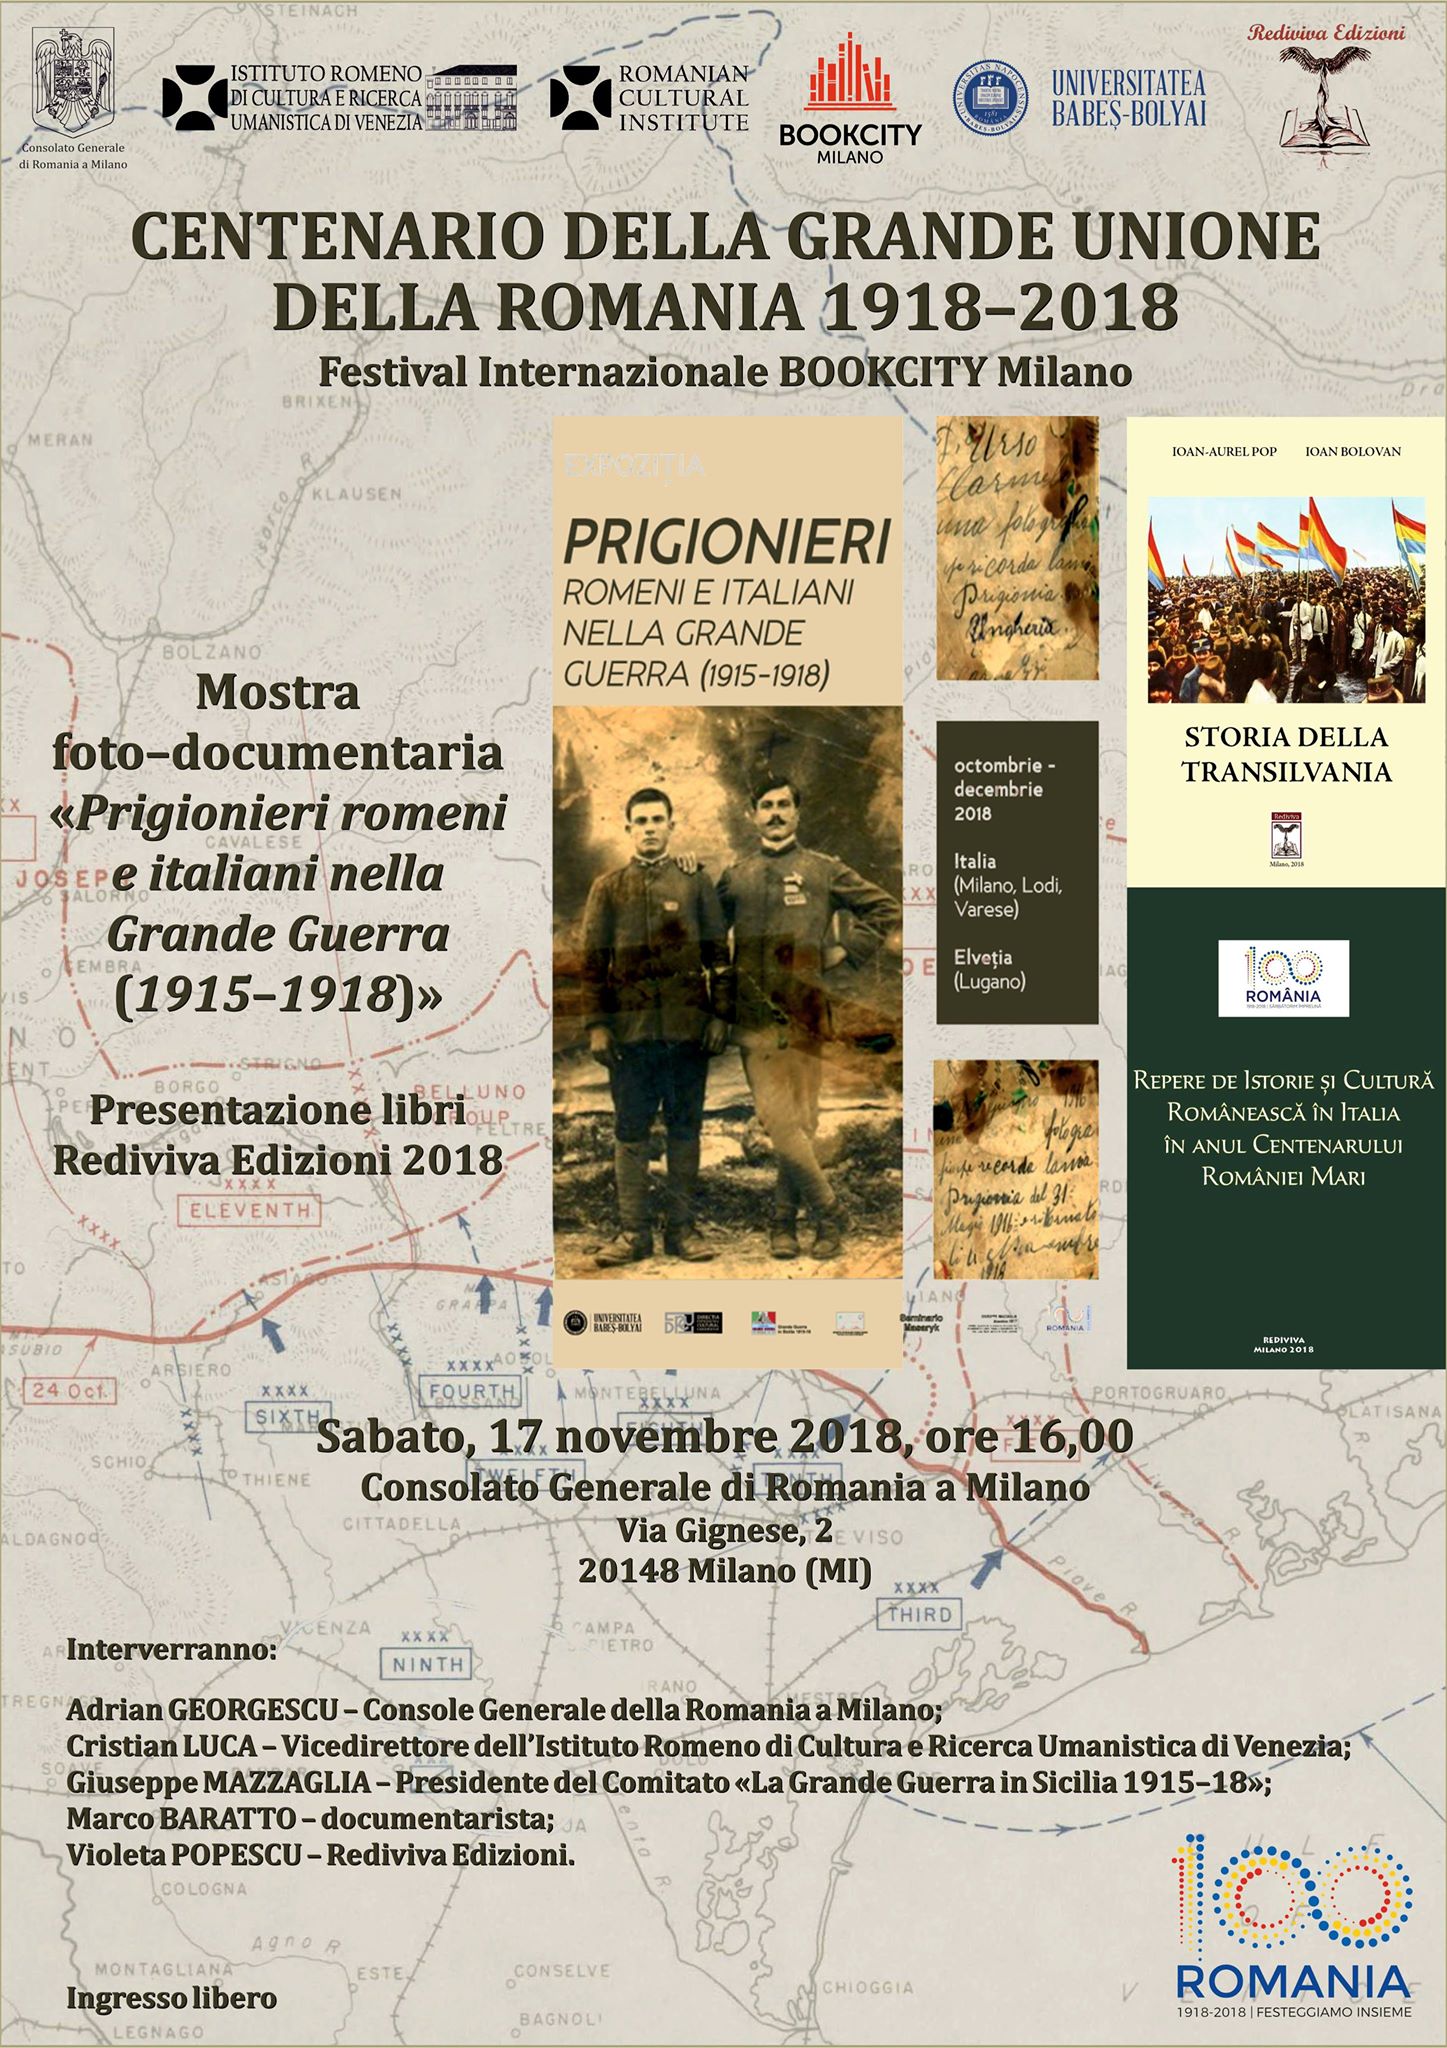 Festivalul Internațional Bookcity Milano: “Centenarul Marii Uniri a României 1918-2018”